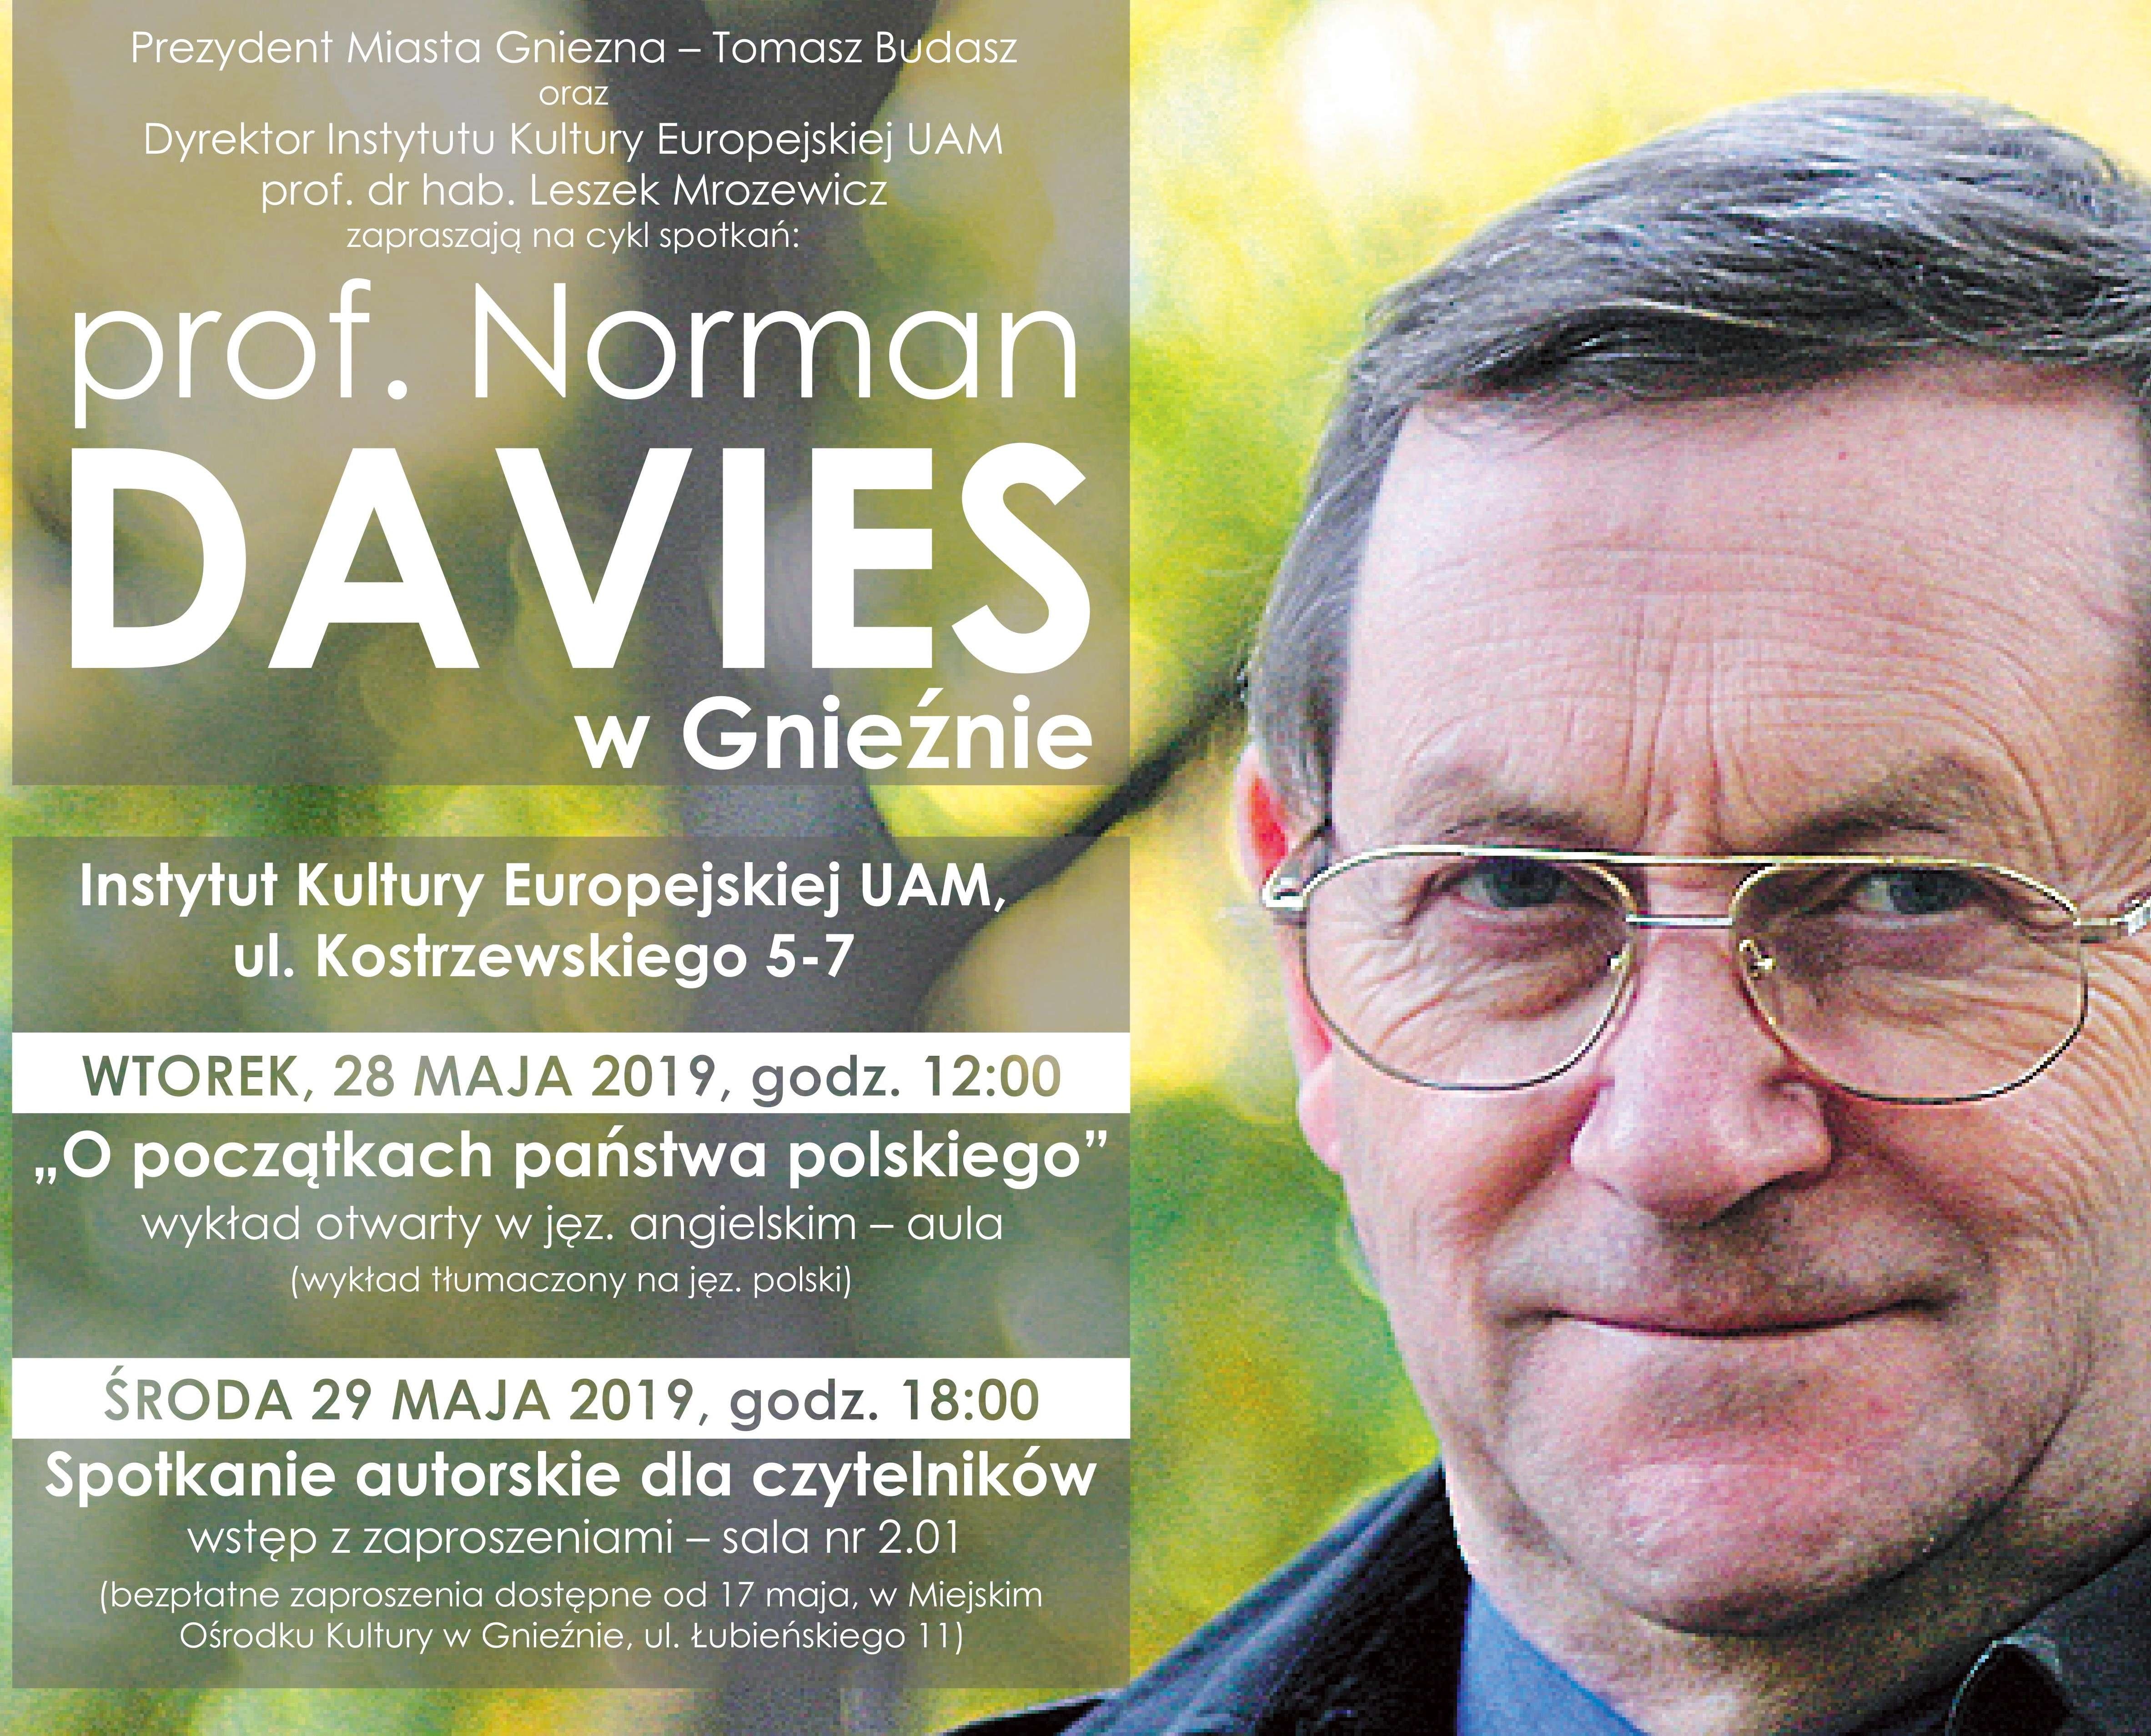 Prof. Norman Davies w Gnieźnie, 28-29 maja 2019r.